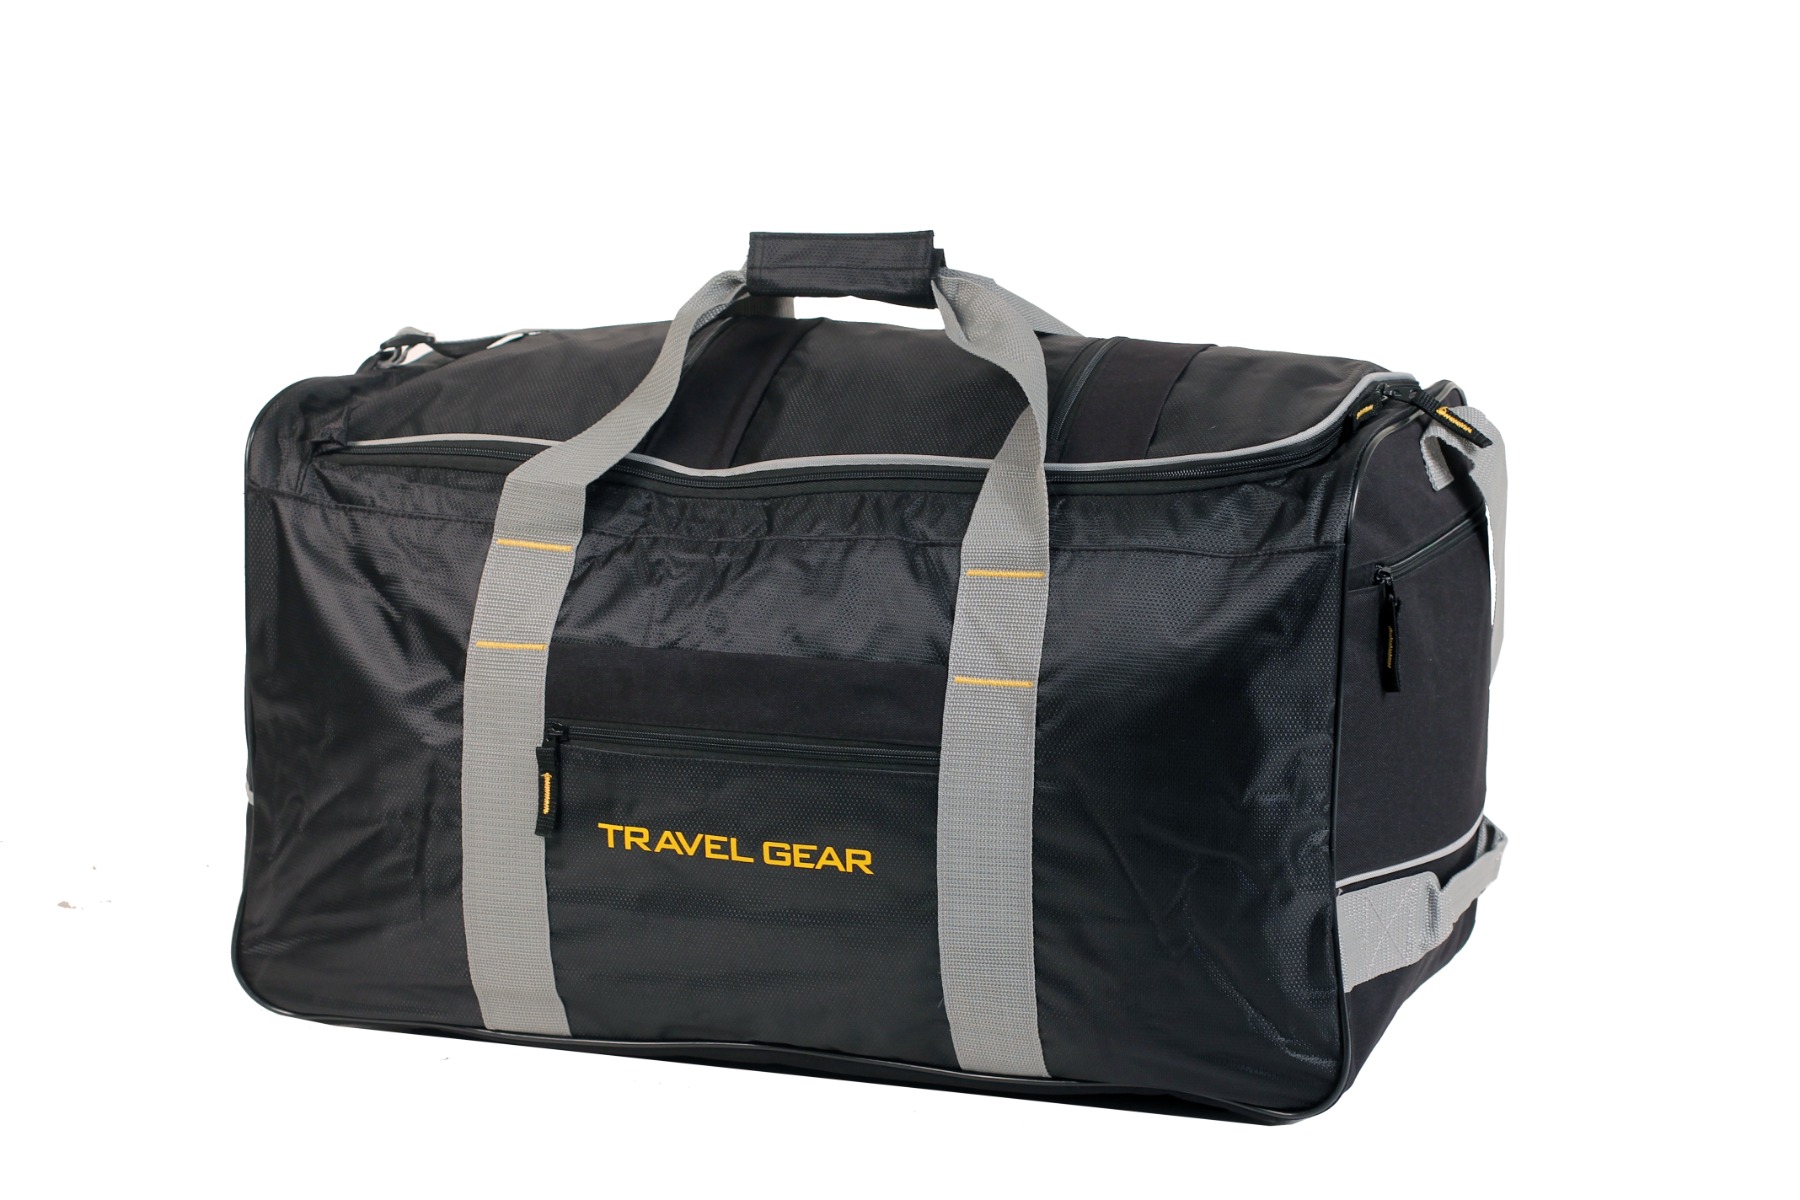 Travel gear Duffle Bag Medium Black